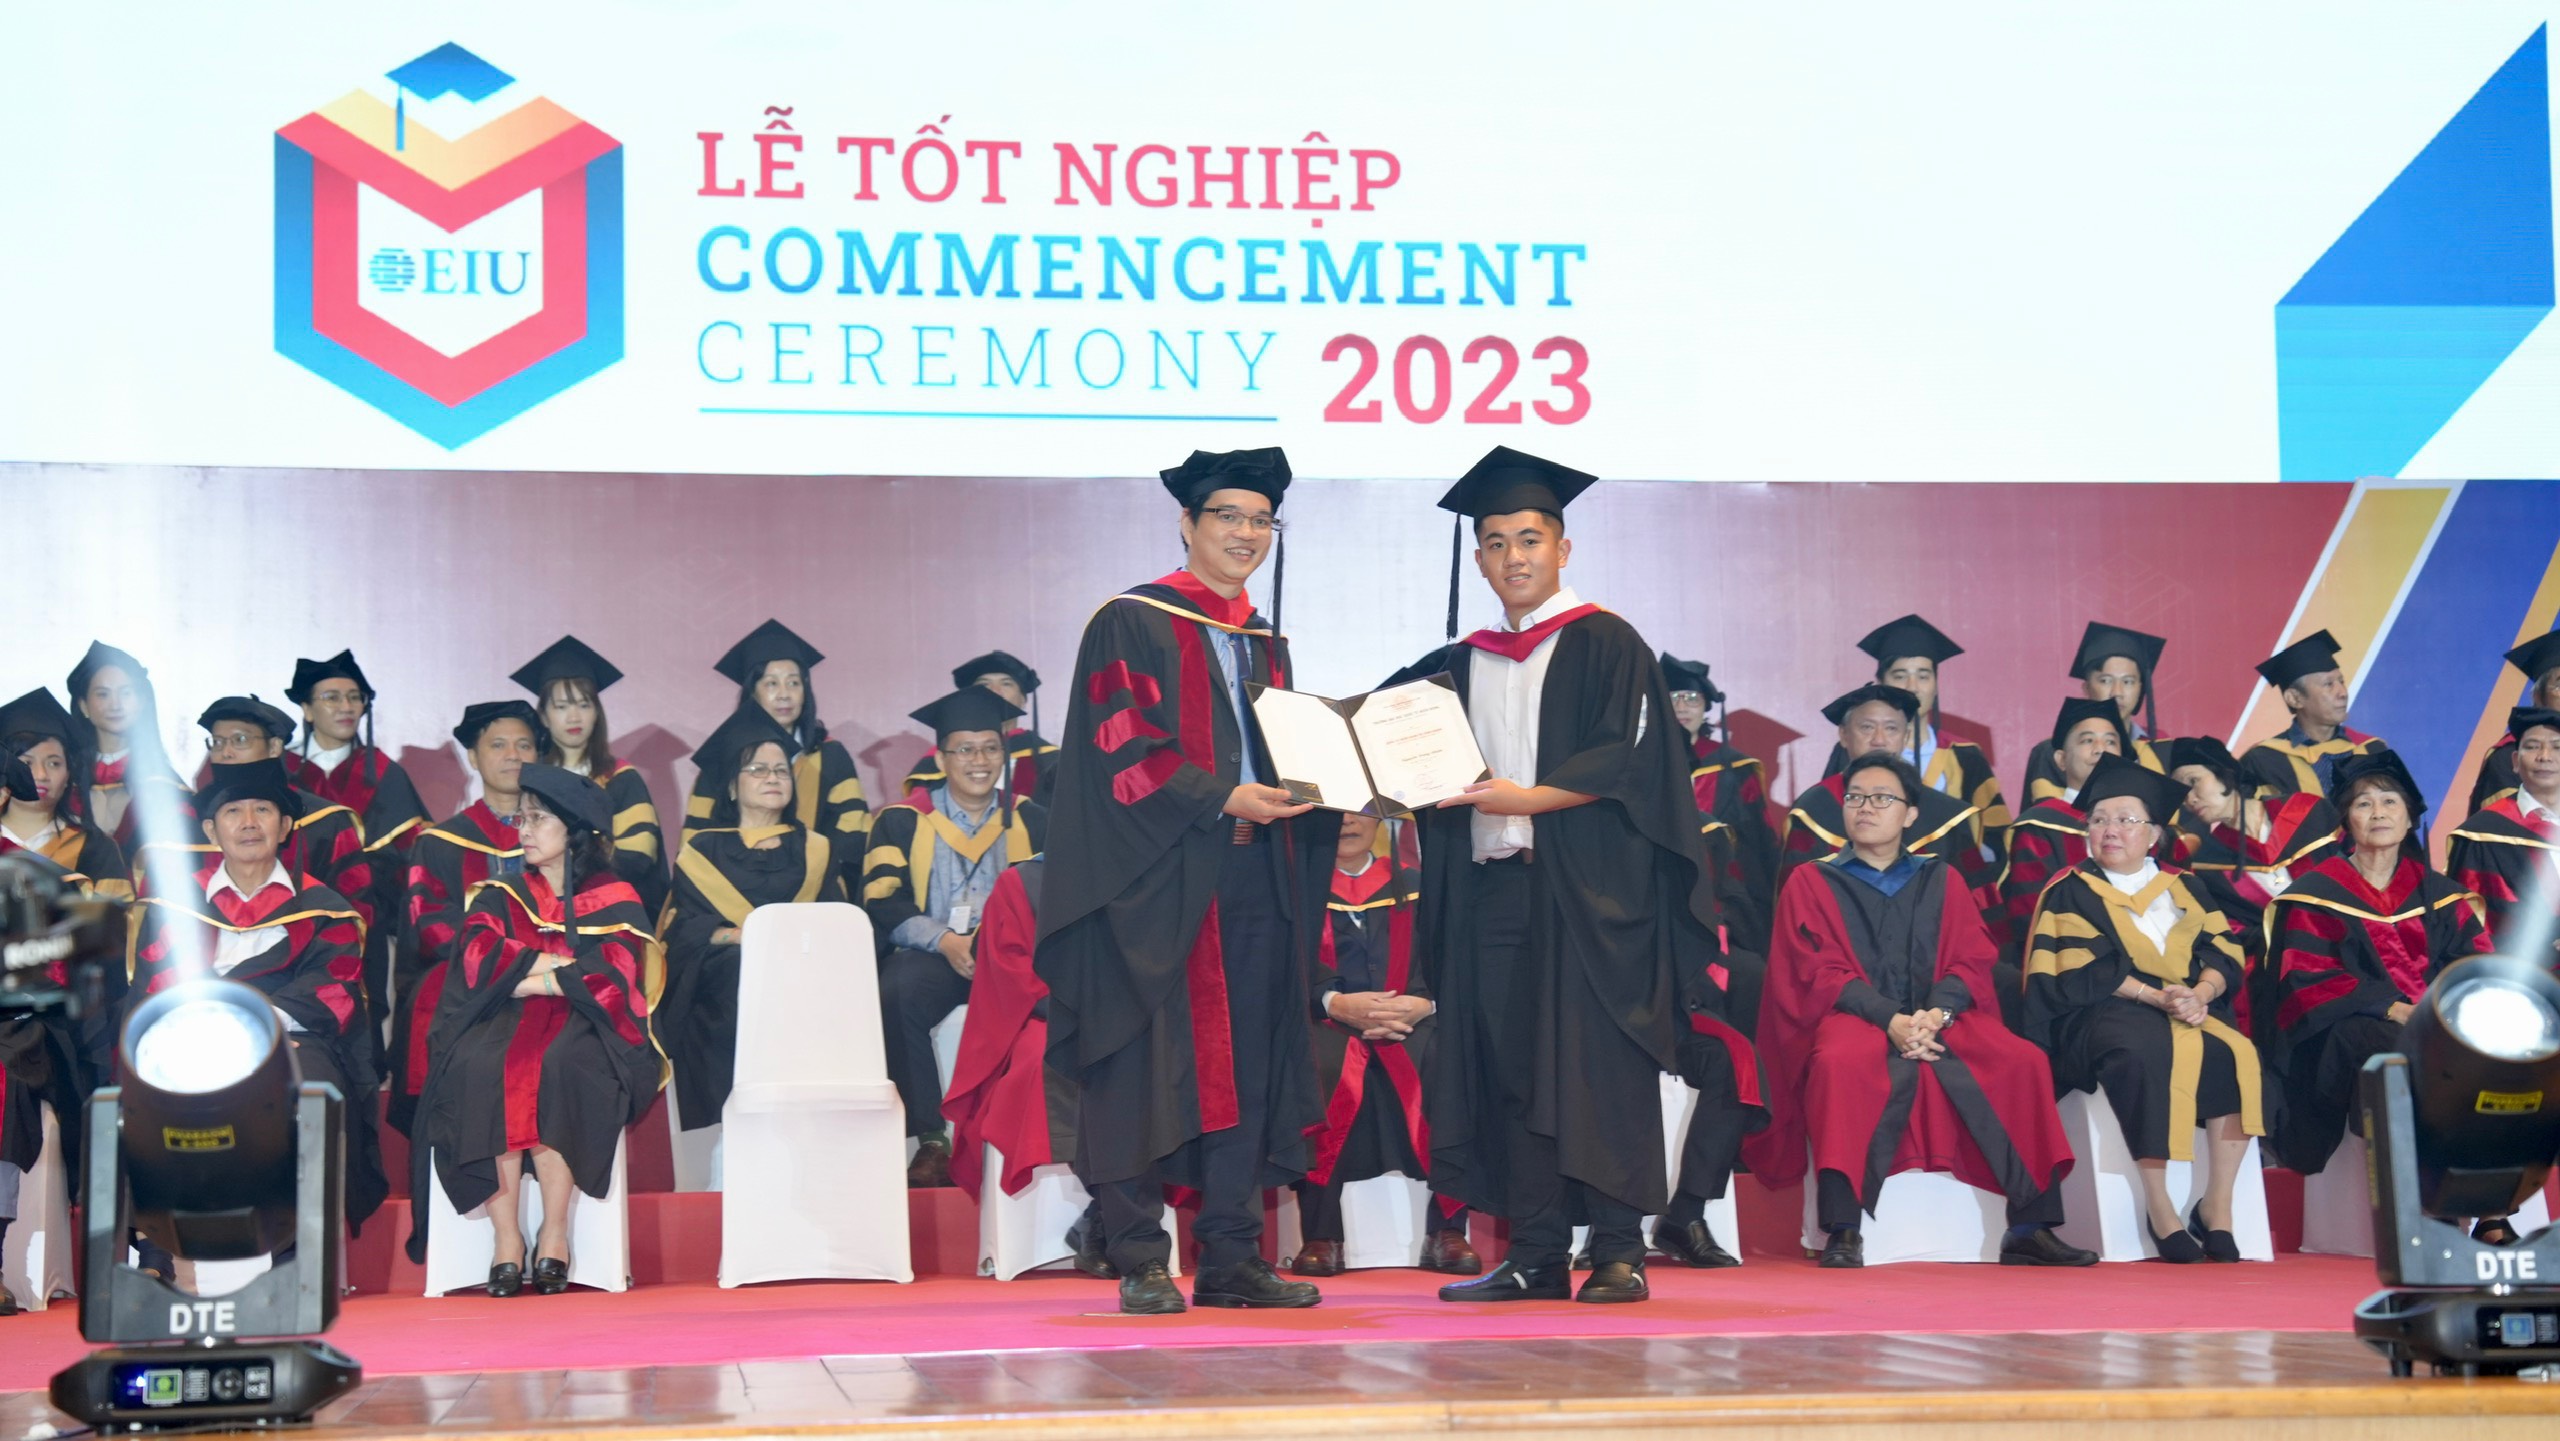 Lãnh đạo Trường Đại học Quốc tế Miền Đông trao bằng cho sinh viên tốt nghiệp năm 2023.